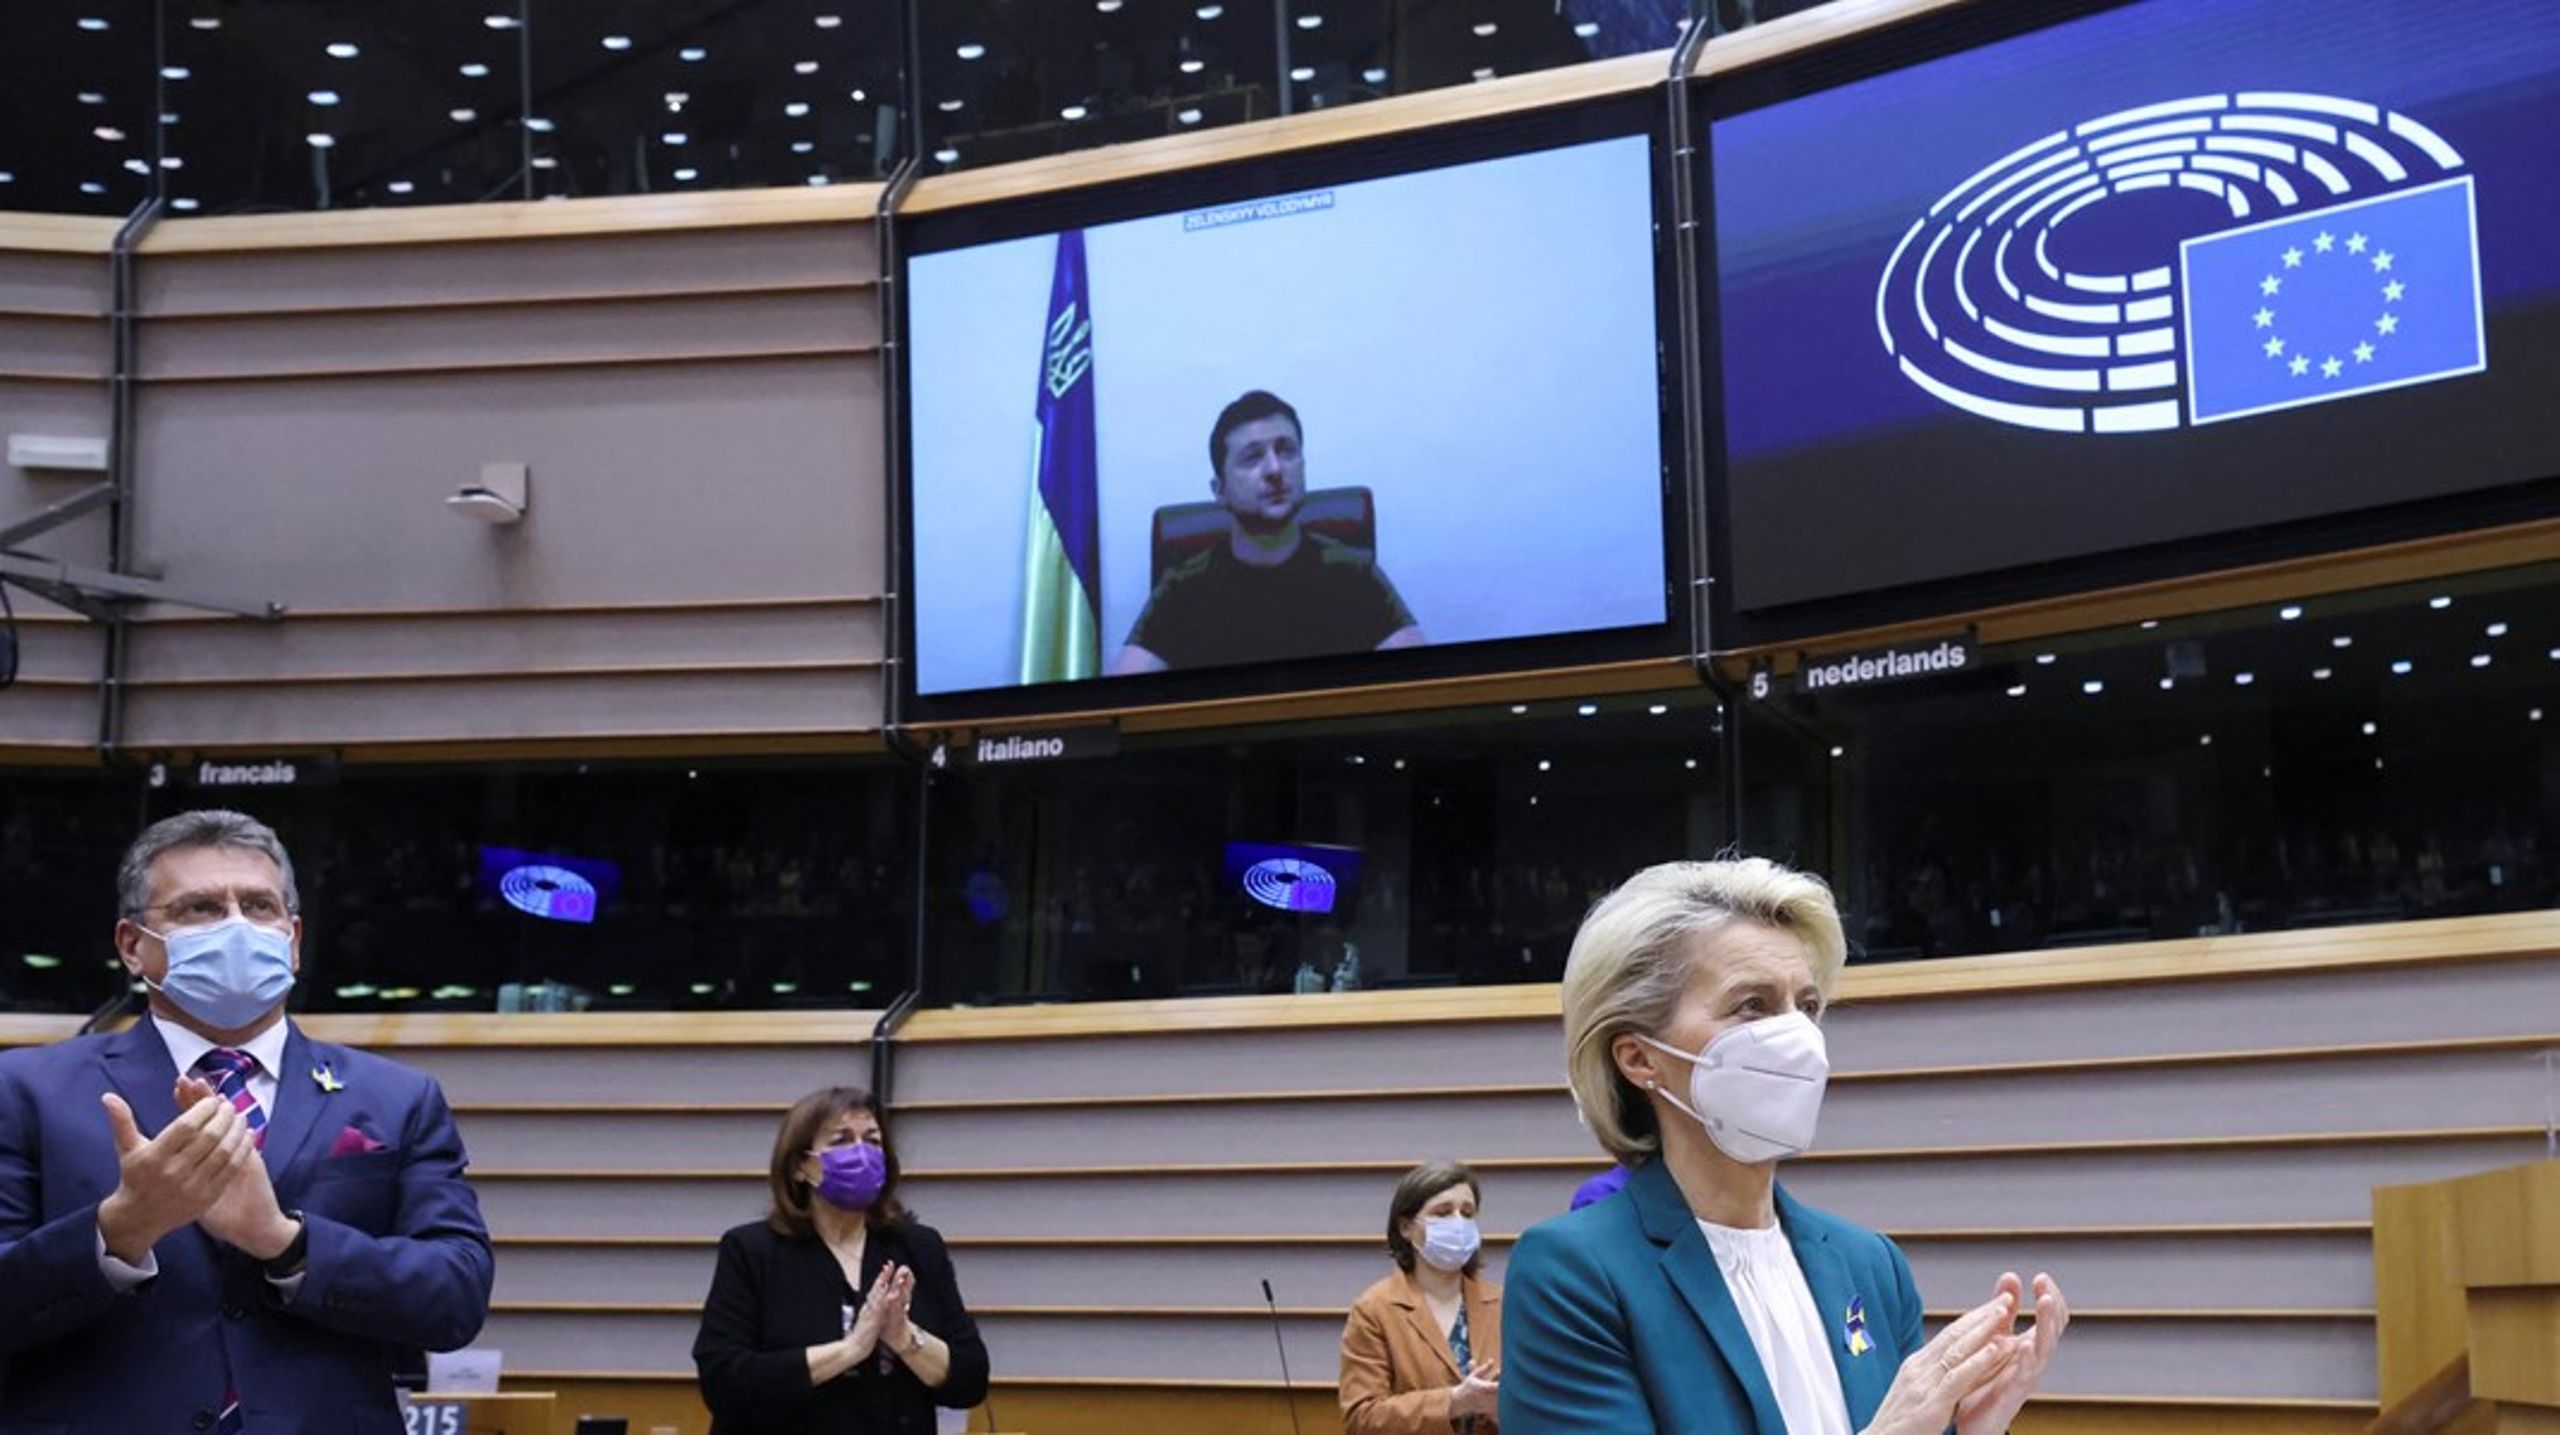 Alle i Europa-Parlamentet rejste sig og klappede, da Ukraines præsident havde holdt sin tale. Flere parlamentsmedlemmer var iklædt blå-gult tøj, der støttede Ukraine.